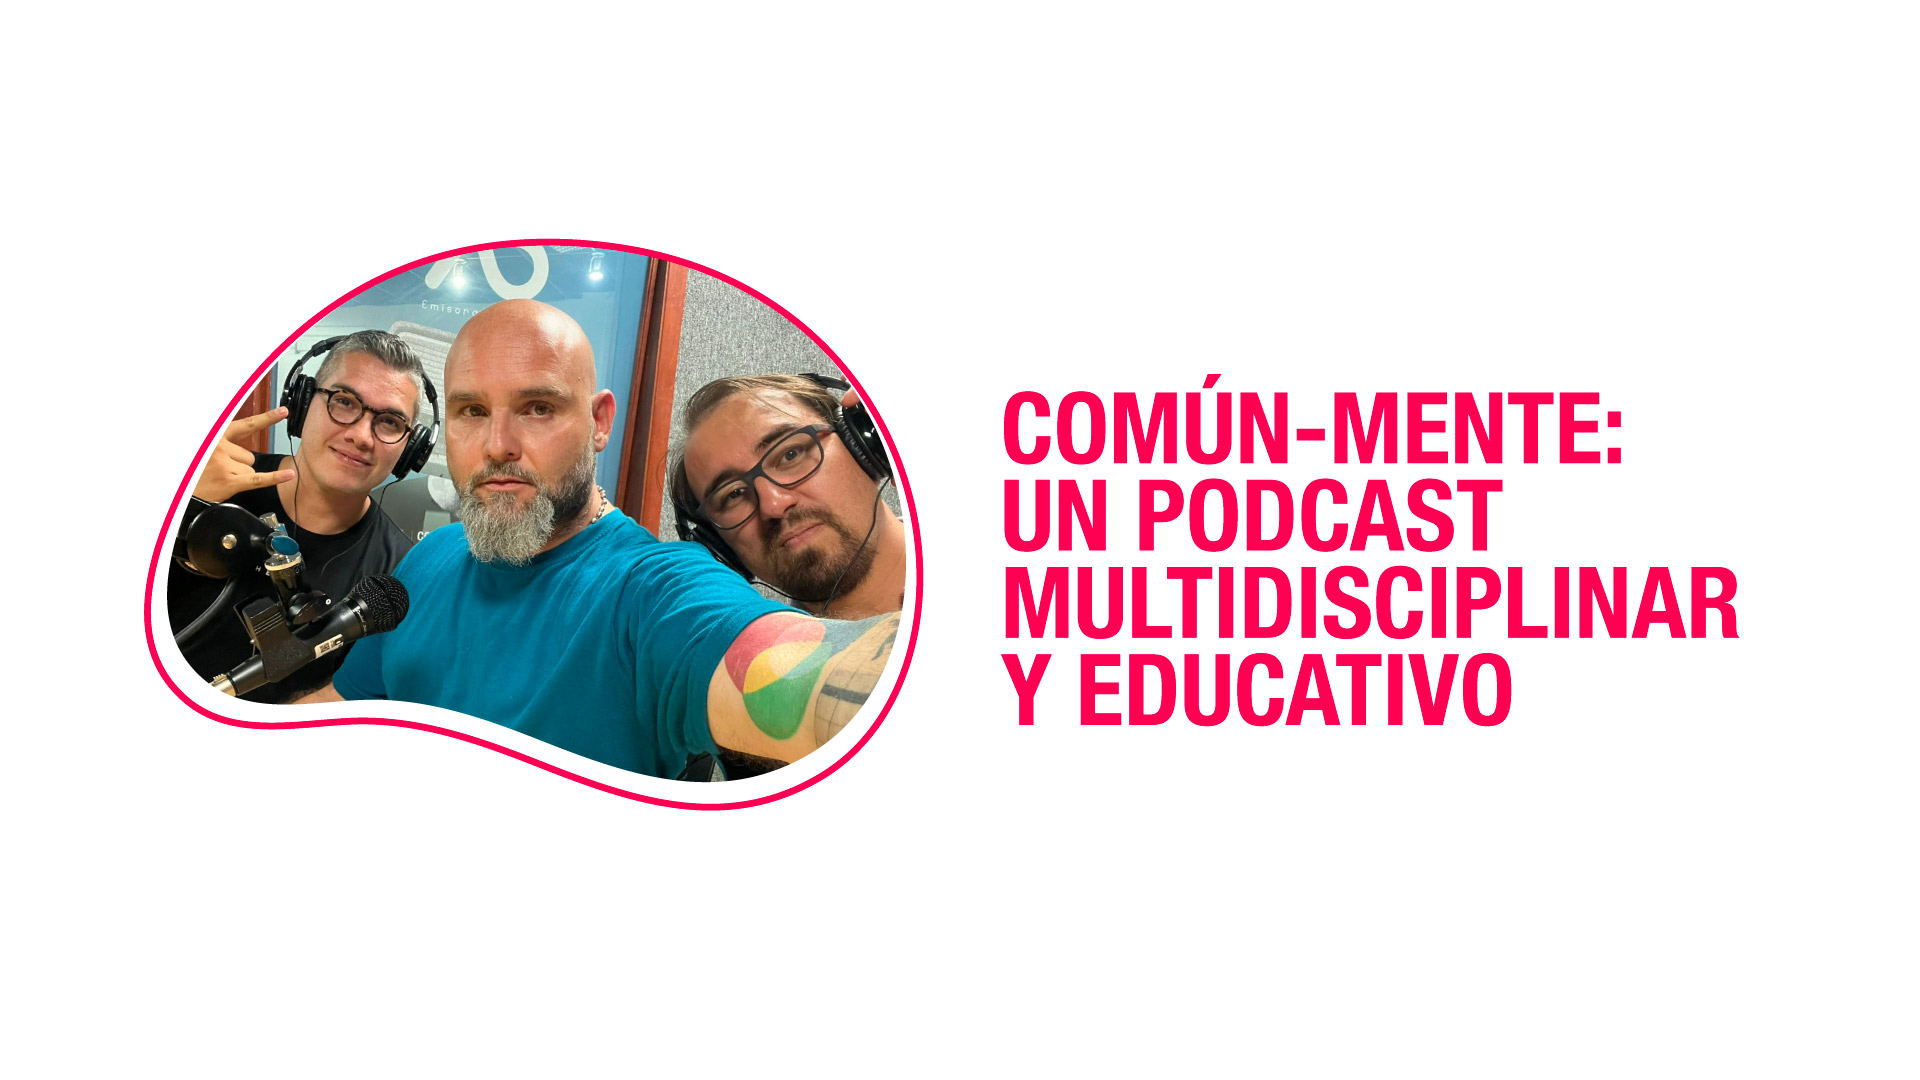 El podcast educativo uniquindiano que trasciende fronteras para acercar el conocimiento a todos